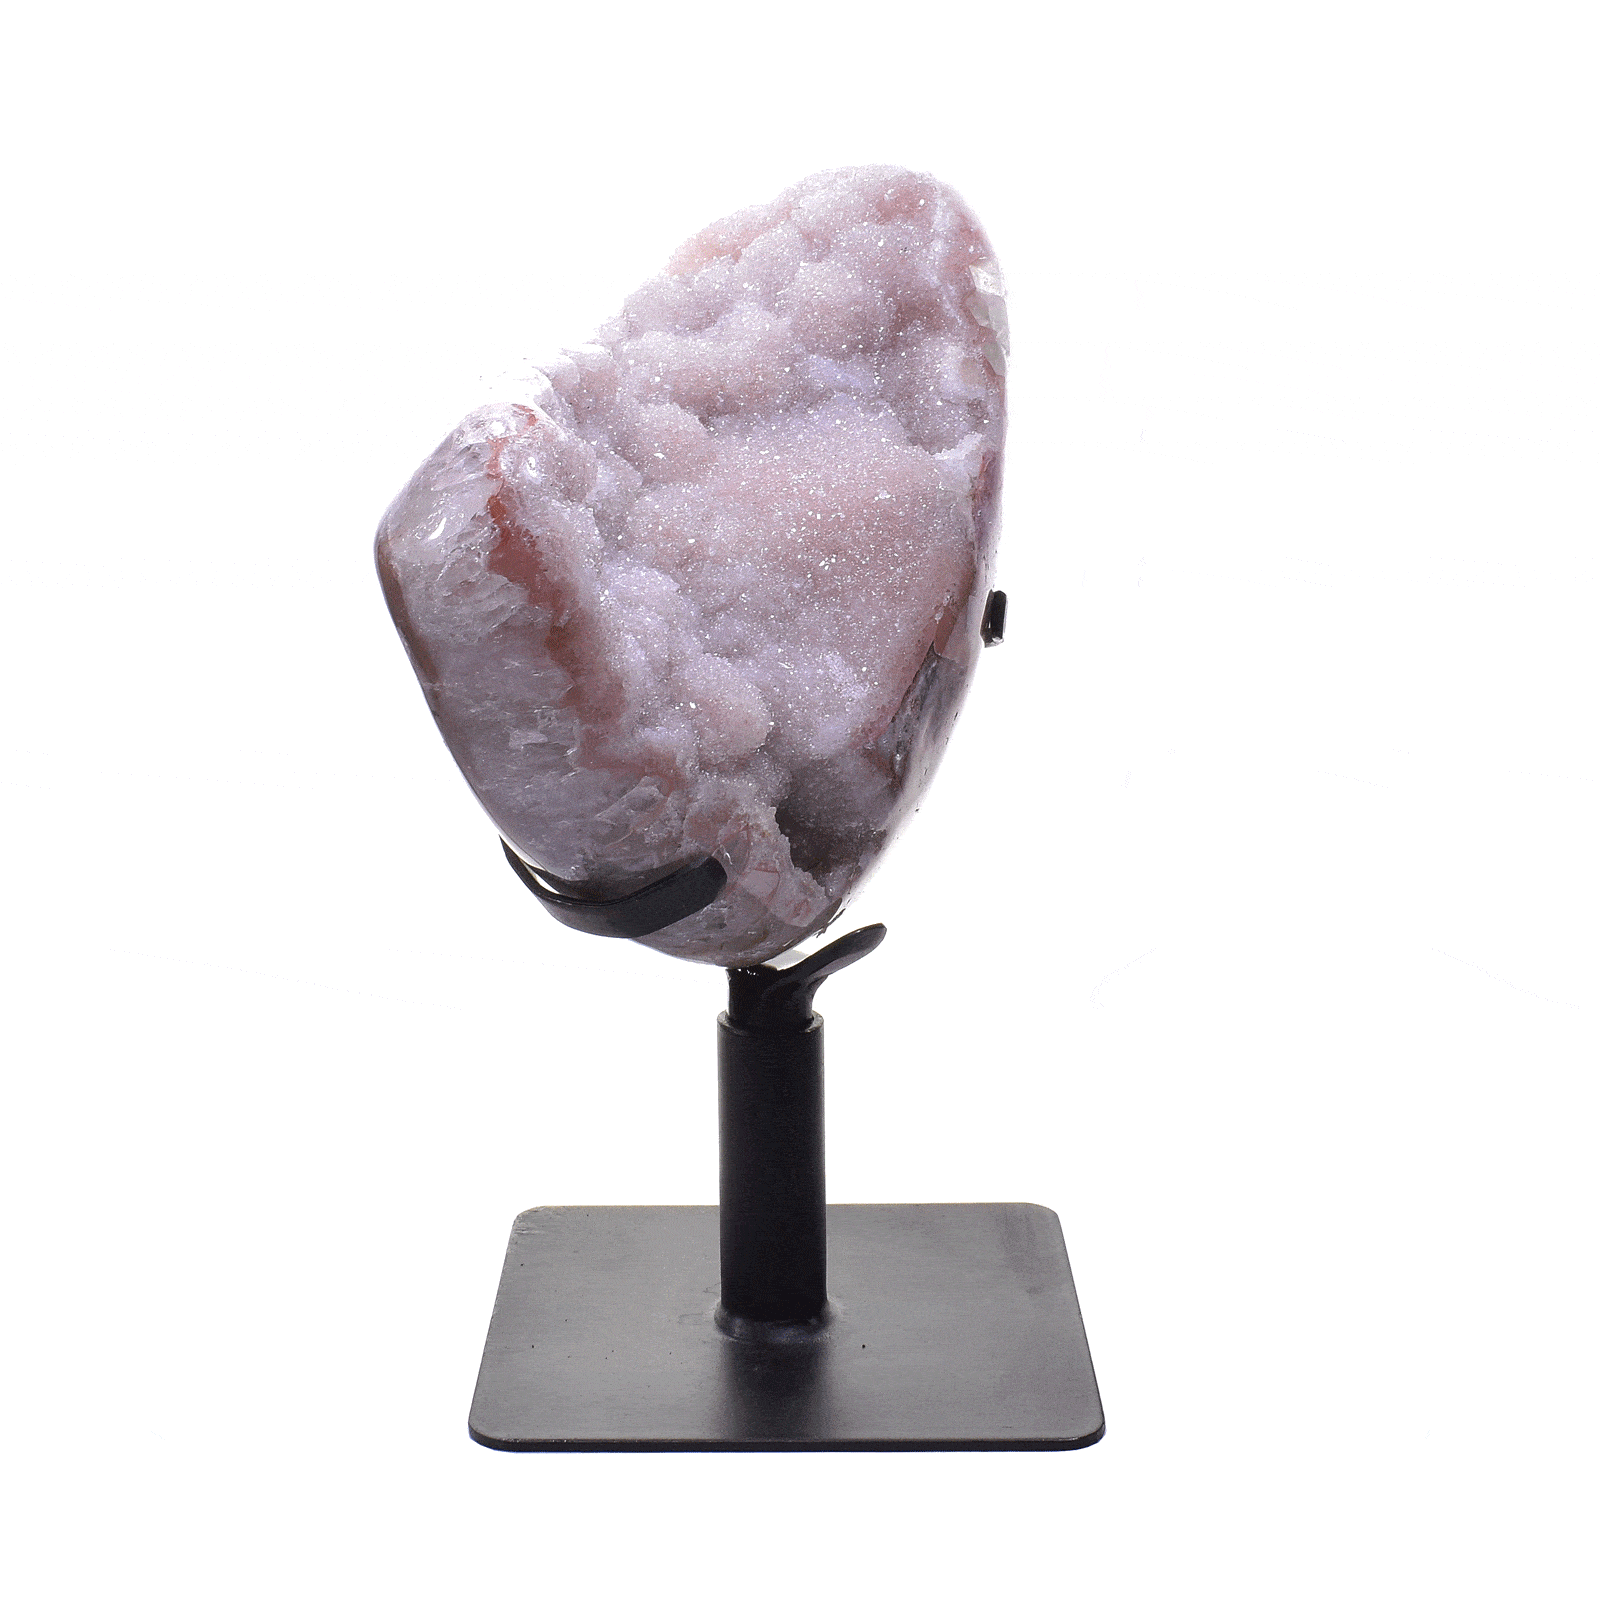 Γυαλισμένο γεώδες φυσικής πέτρας ροζ αμεθύστου, τοποθετημένο σε μαύρη, περιστρεφόμενη, μεταλλική βάση. Το γεώδες πάνω στη βάση έχει ύψος 30cm. Αγοράστε online shop.